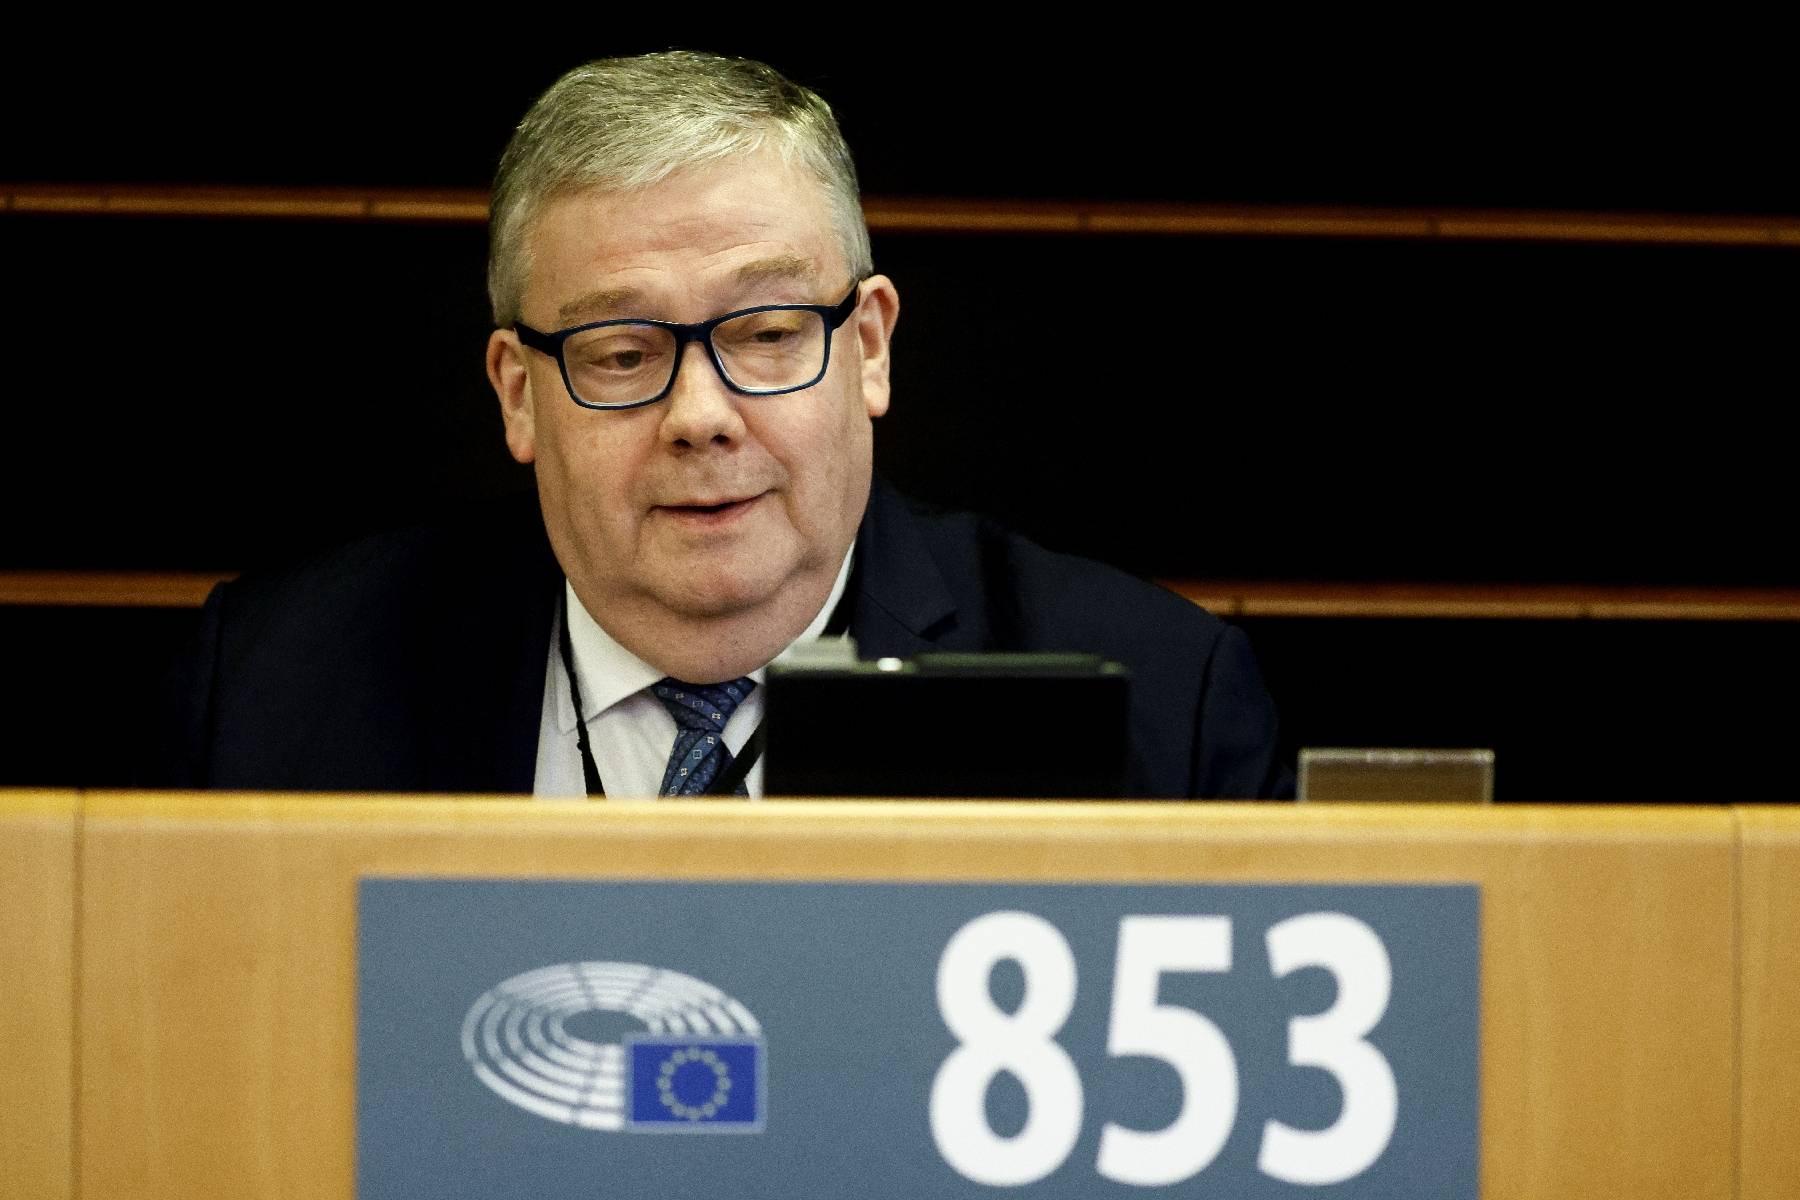 Corruption au Parlement européen: l'eurodéputé belge Tarabella inculpé et écroué